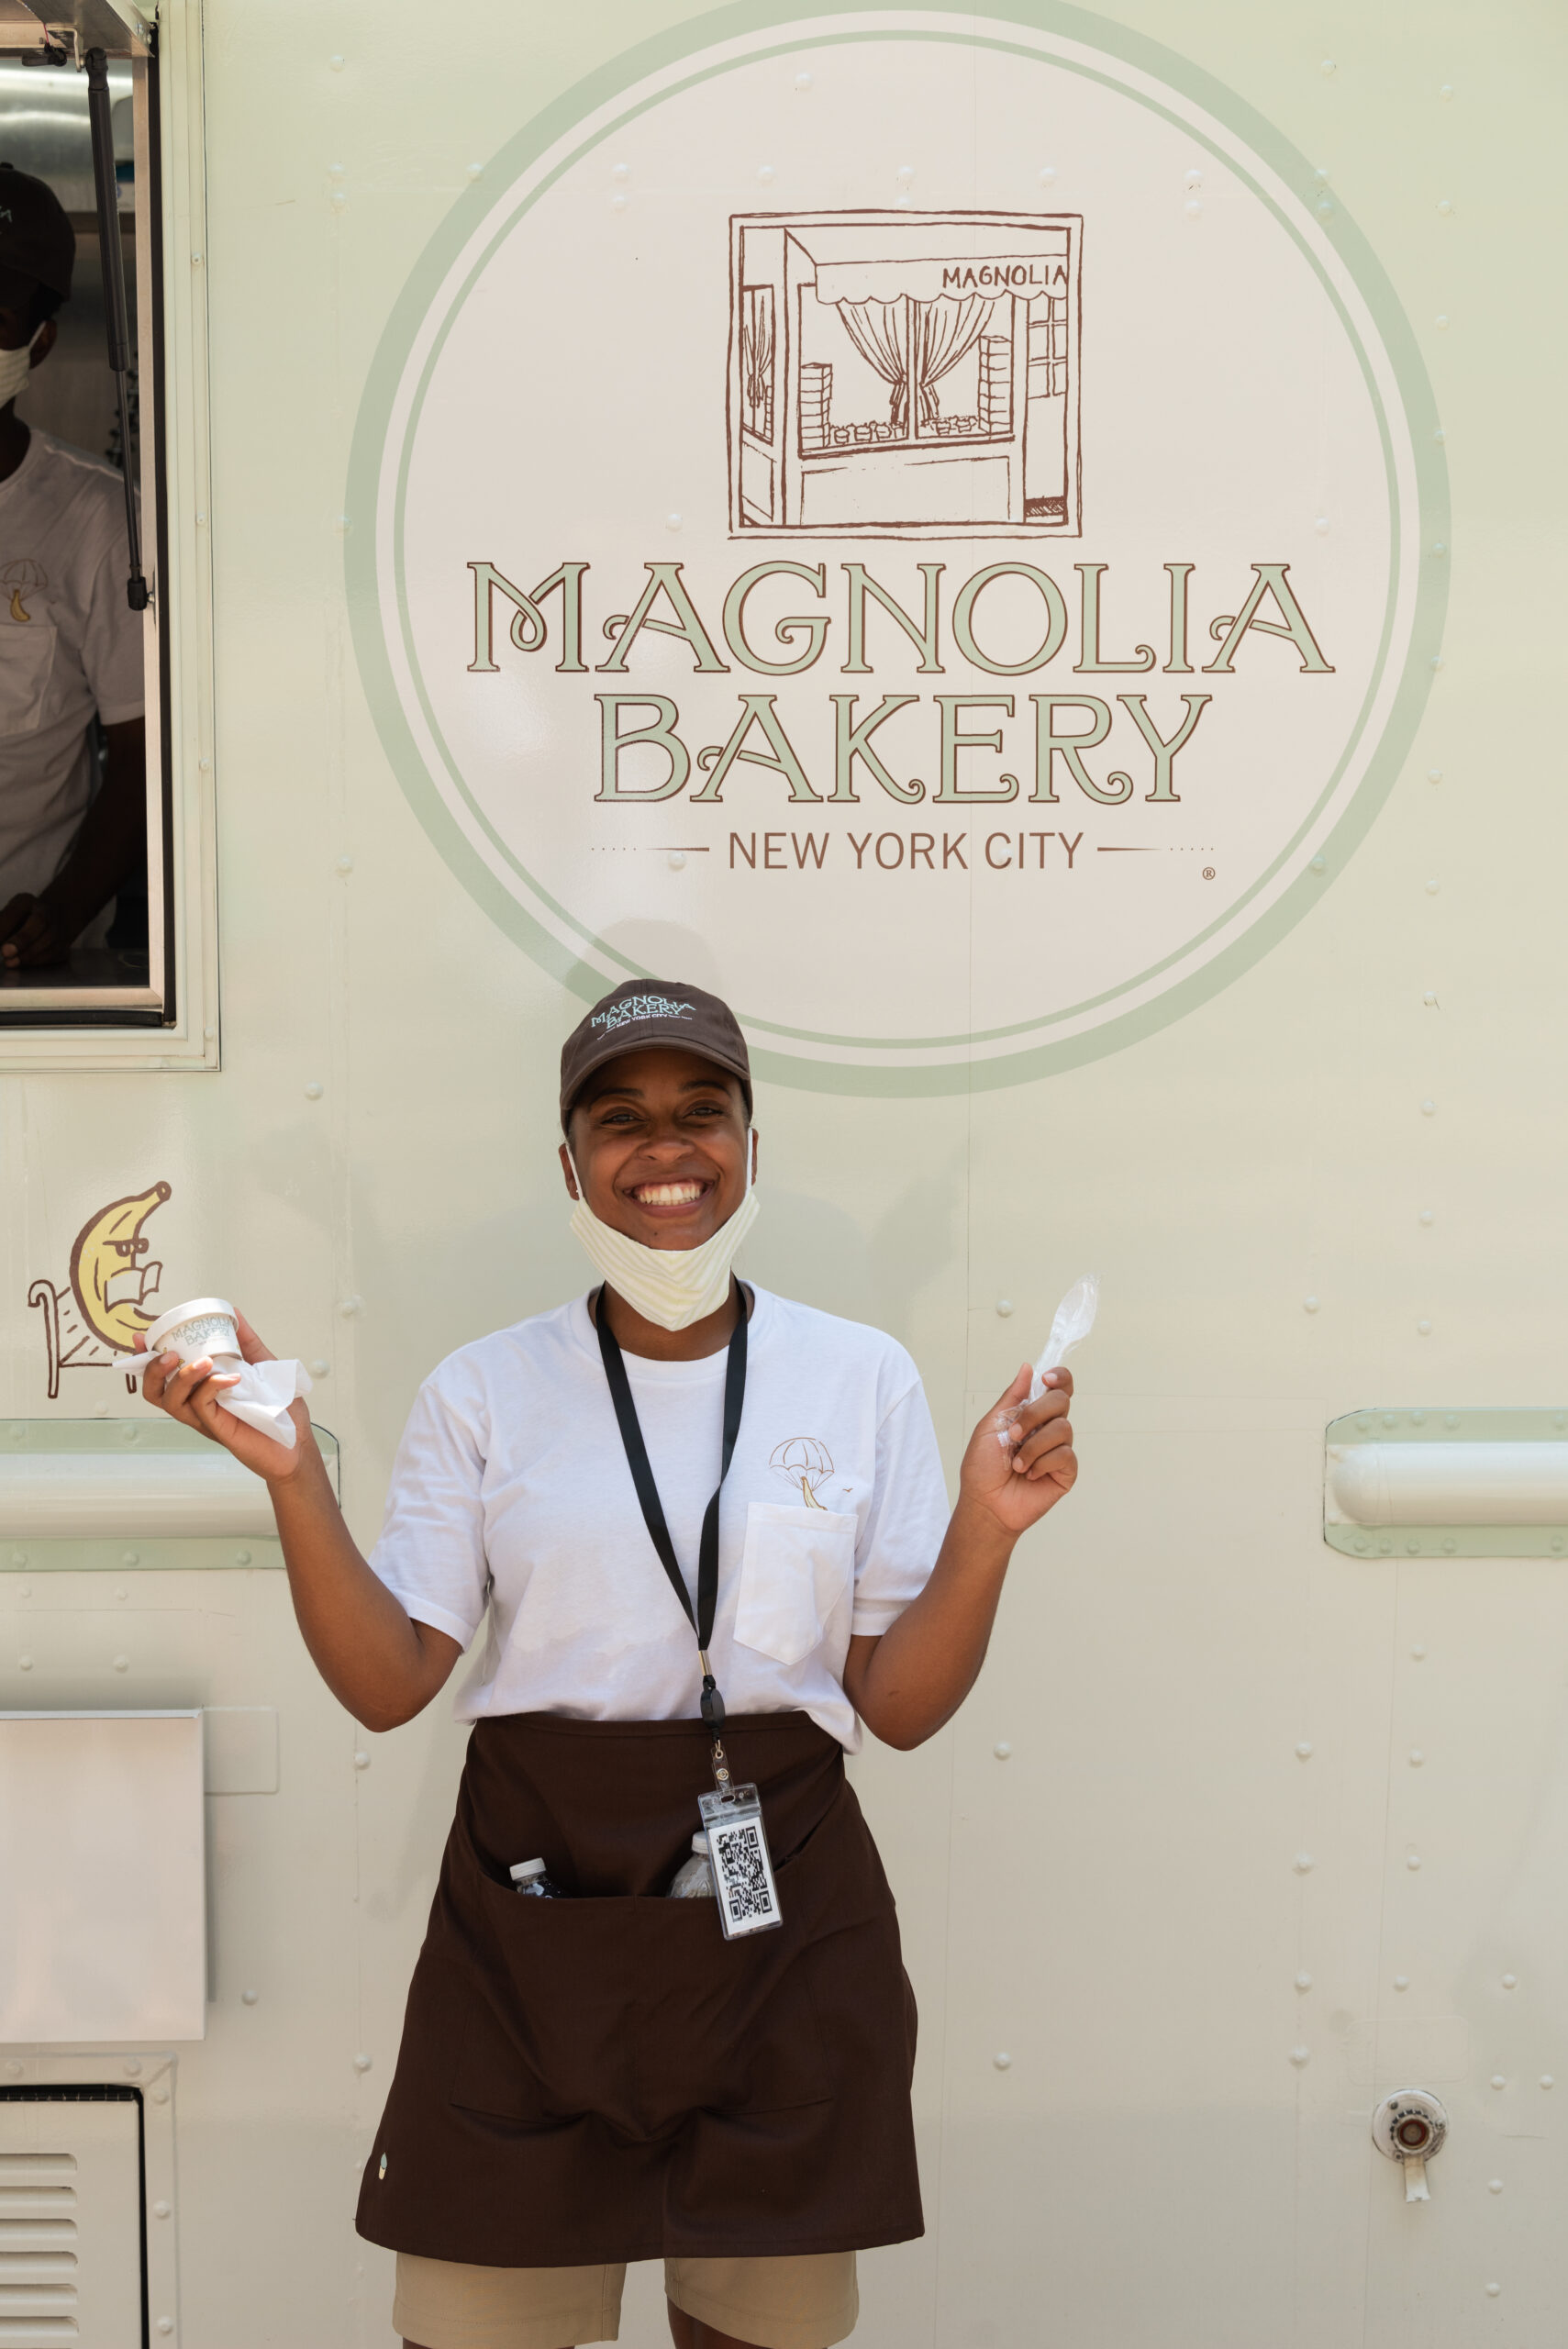 Magnolia Bakery Brand Ambassador holding pudding